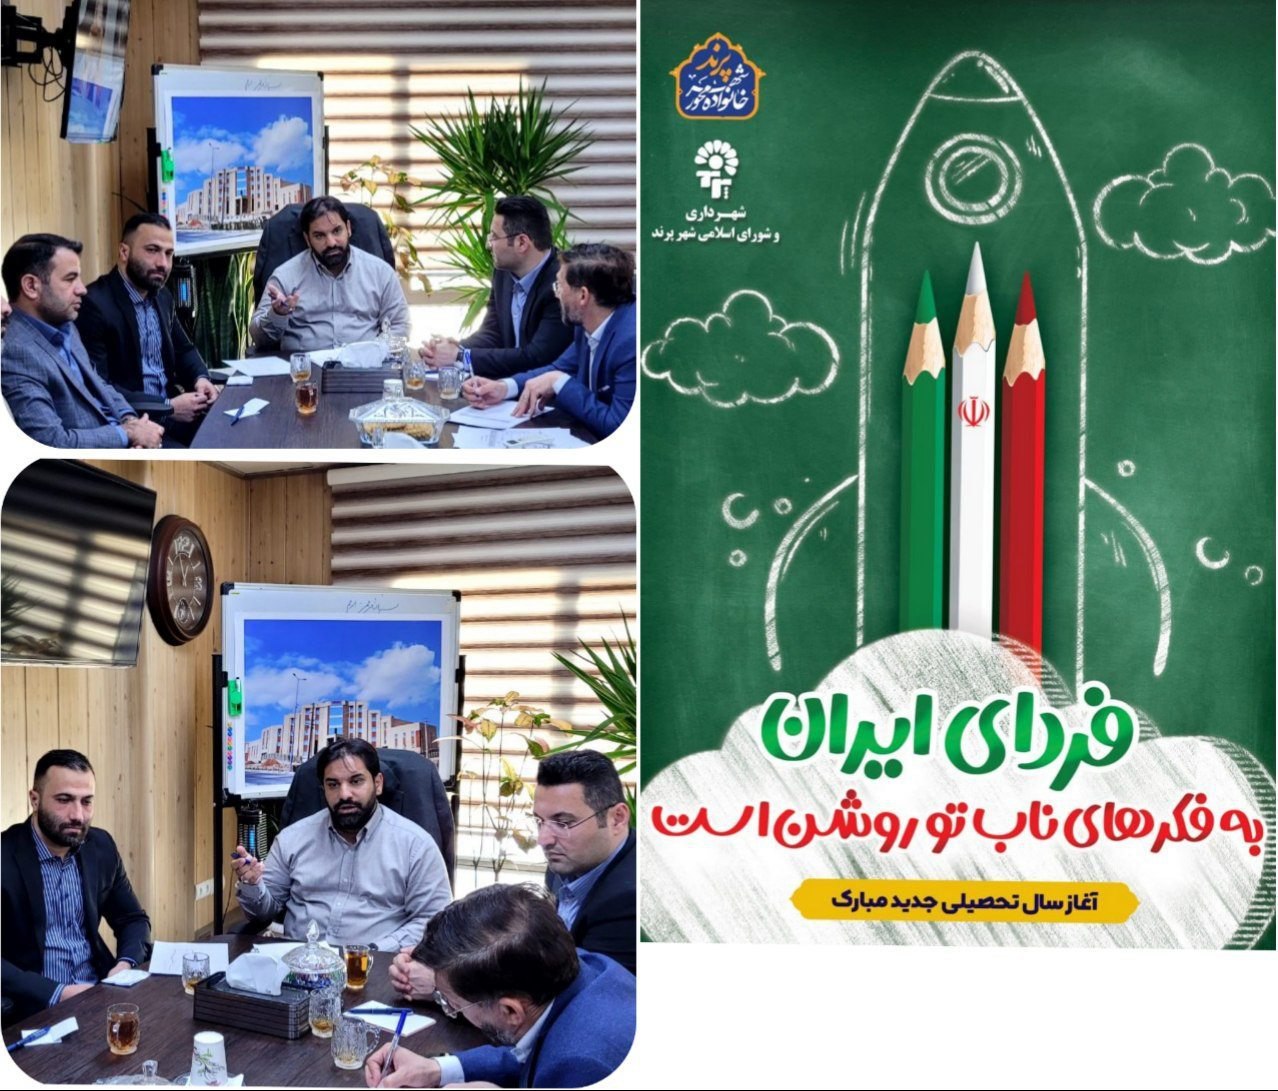 تشکیل کارگروه استقبال از مهر در شهرداری پرند  